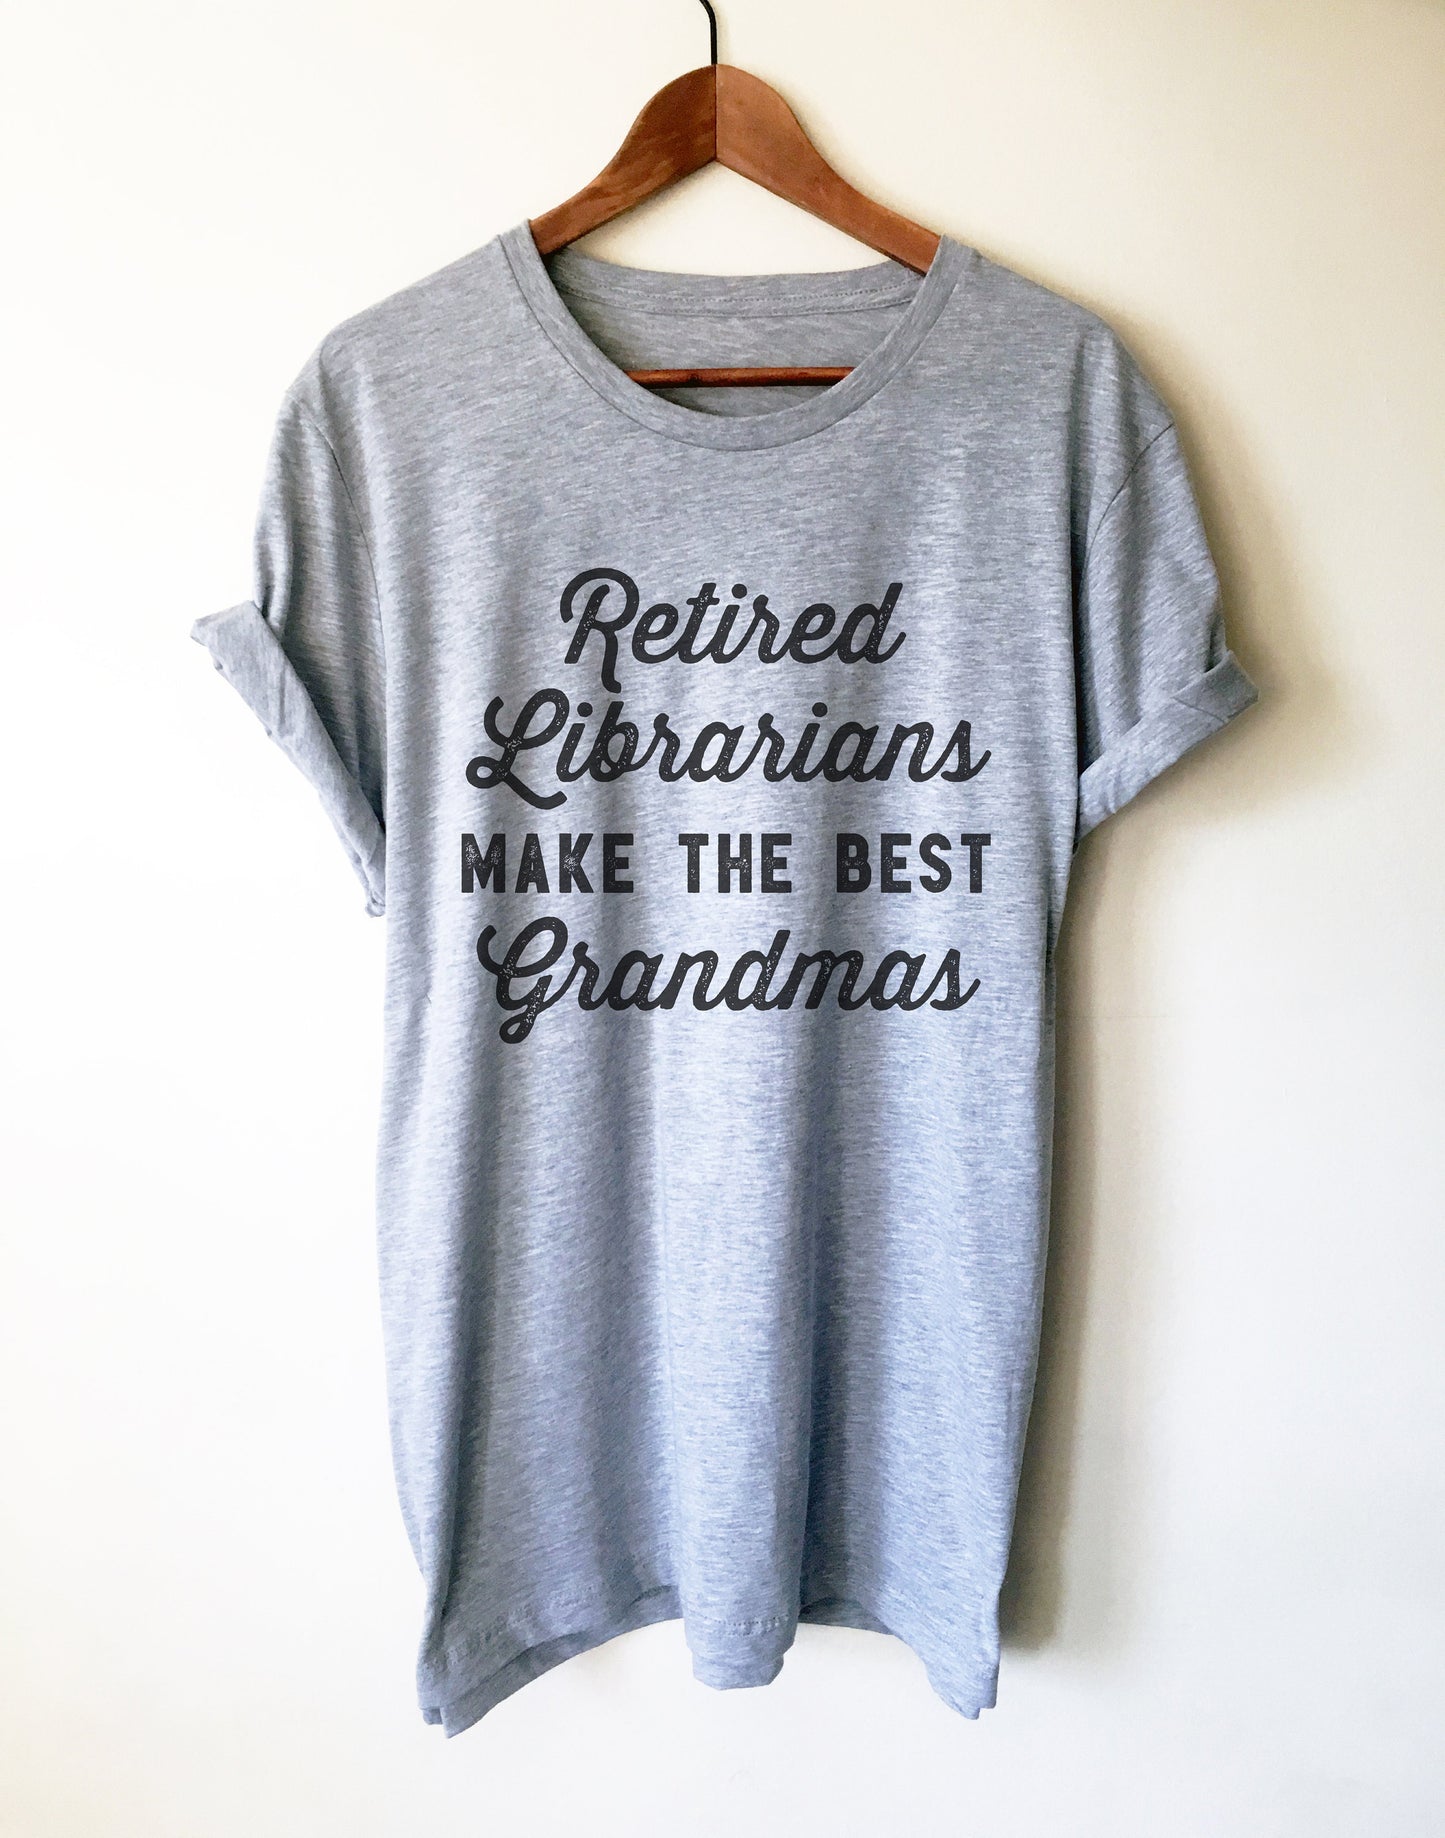 Retired Librarians Make The Best Grandmas Unisex Shirt - Librarian Shirt, Librarian Gift, Reading Shirts, Book Lover Gift, Retirement Shirt